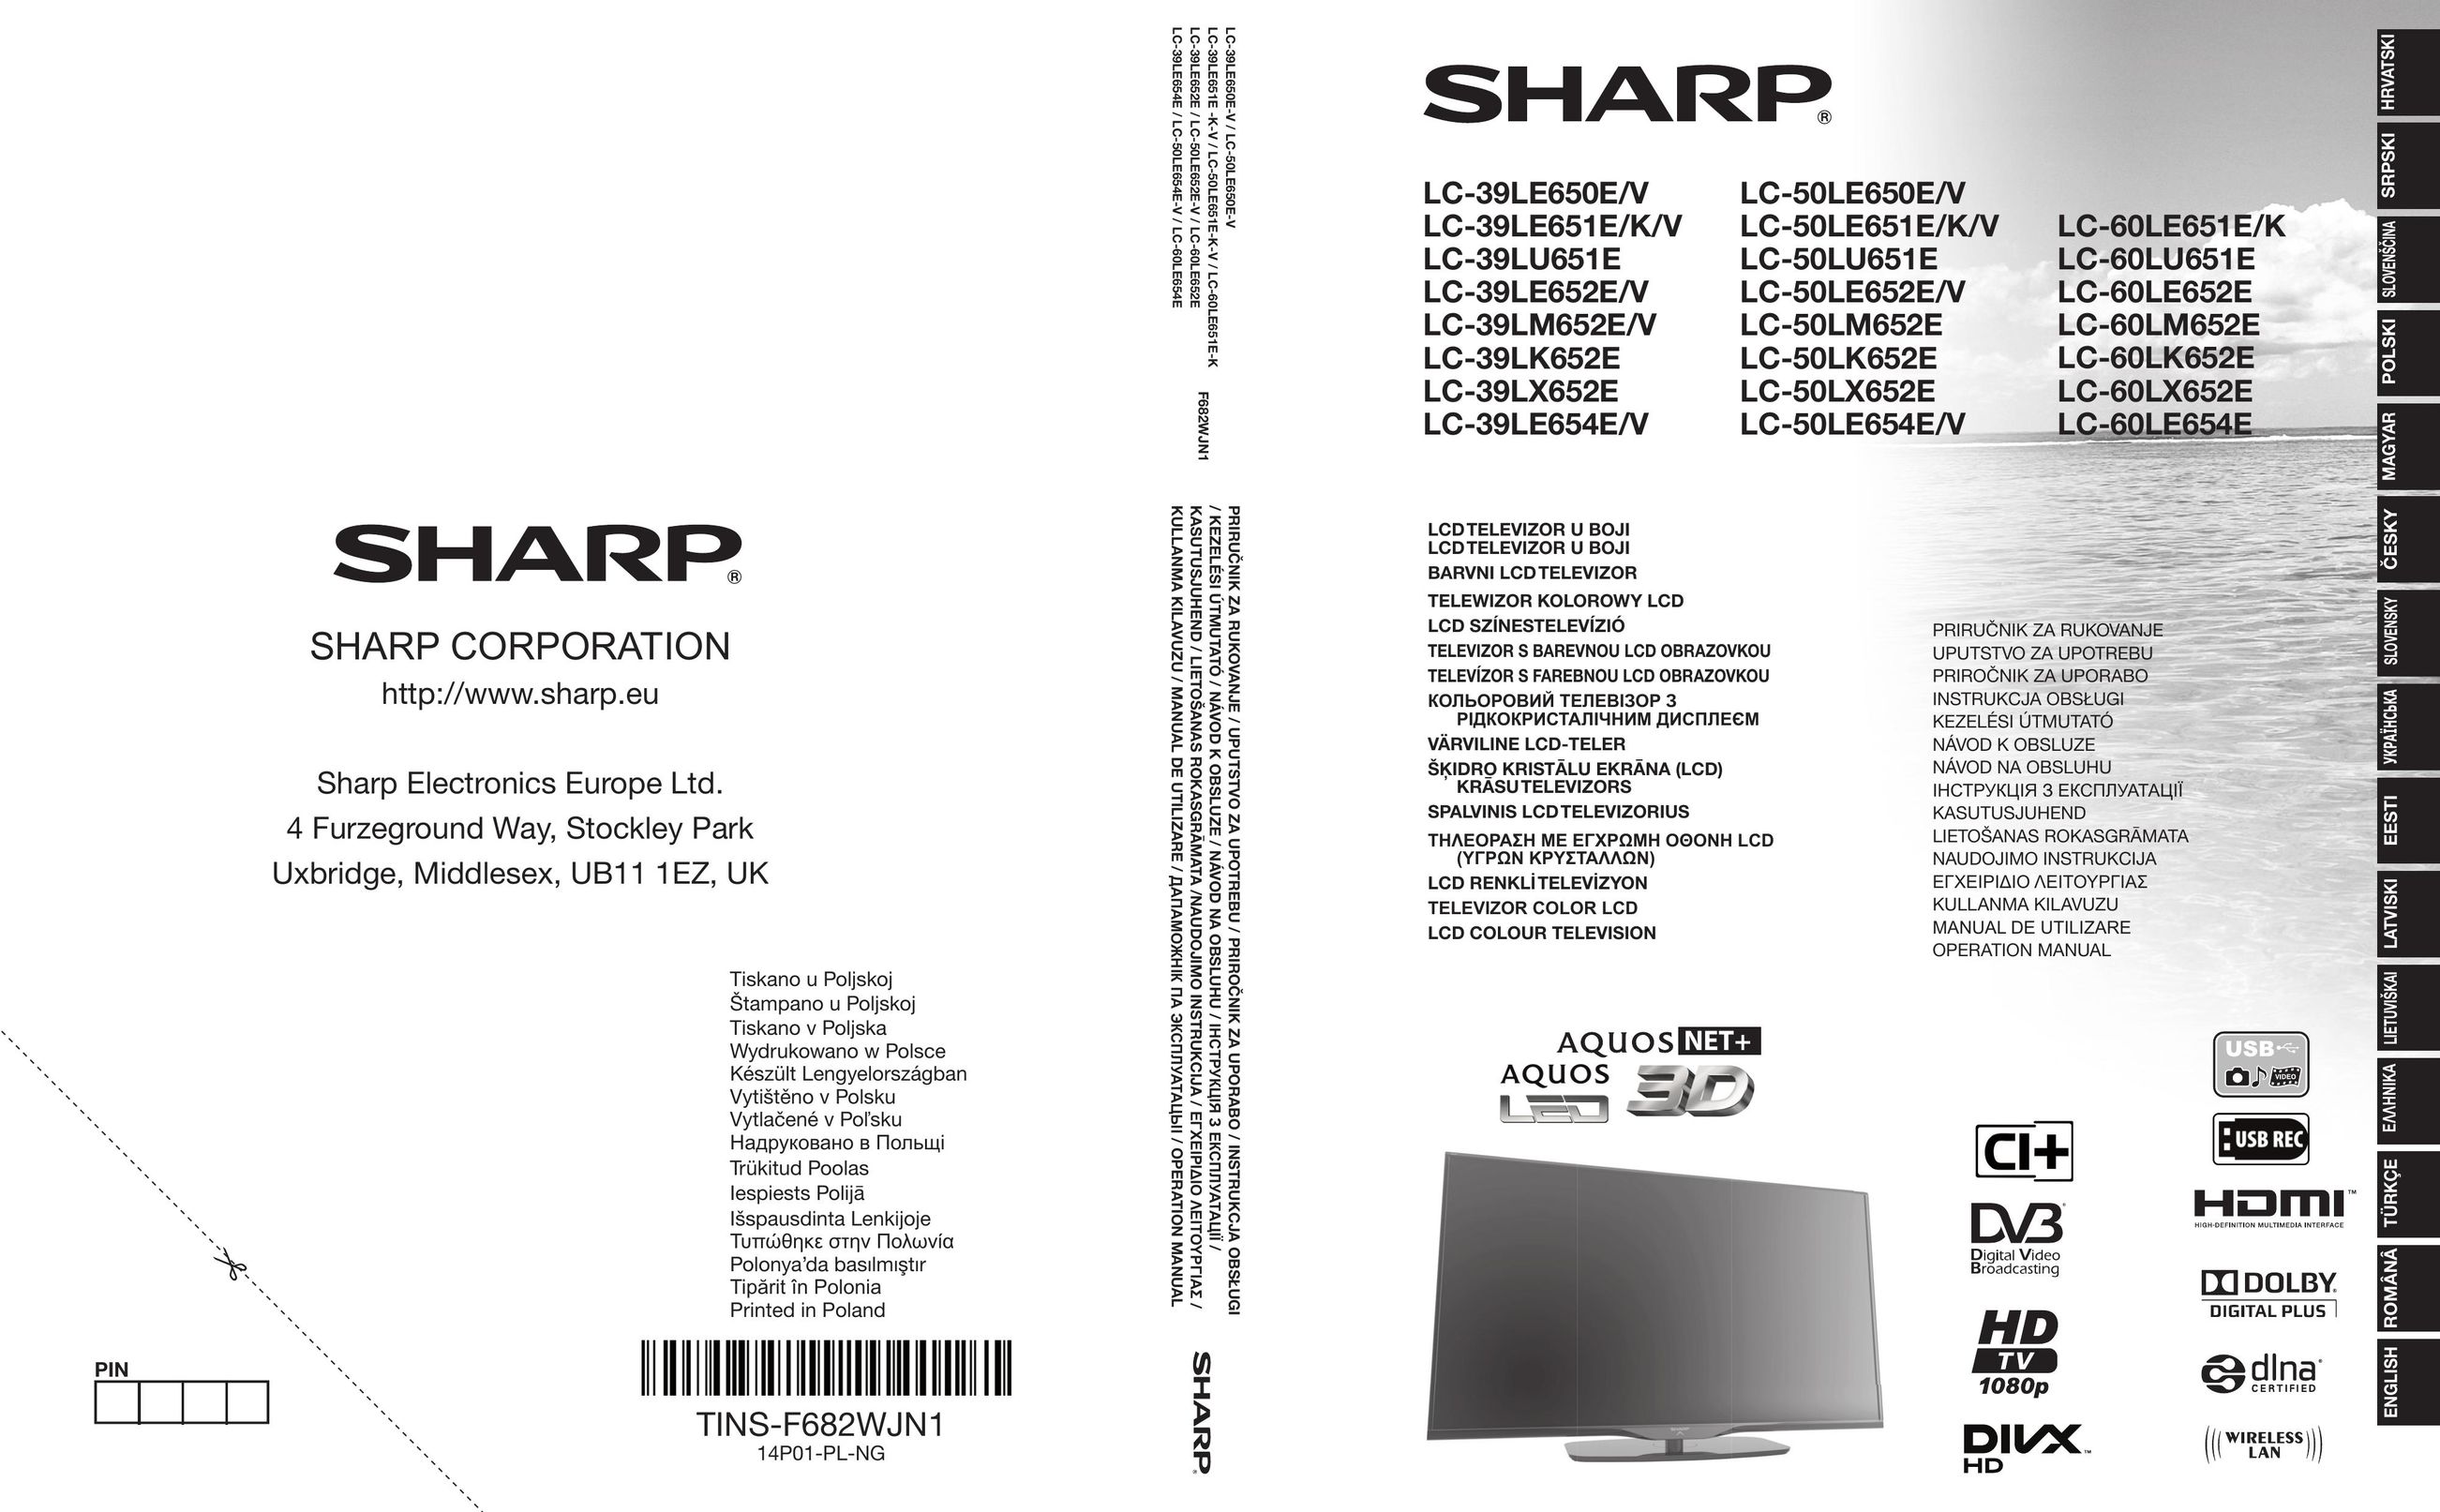 Sharp LC-50LE652E/V Car Video System User Manual